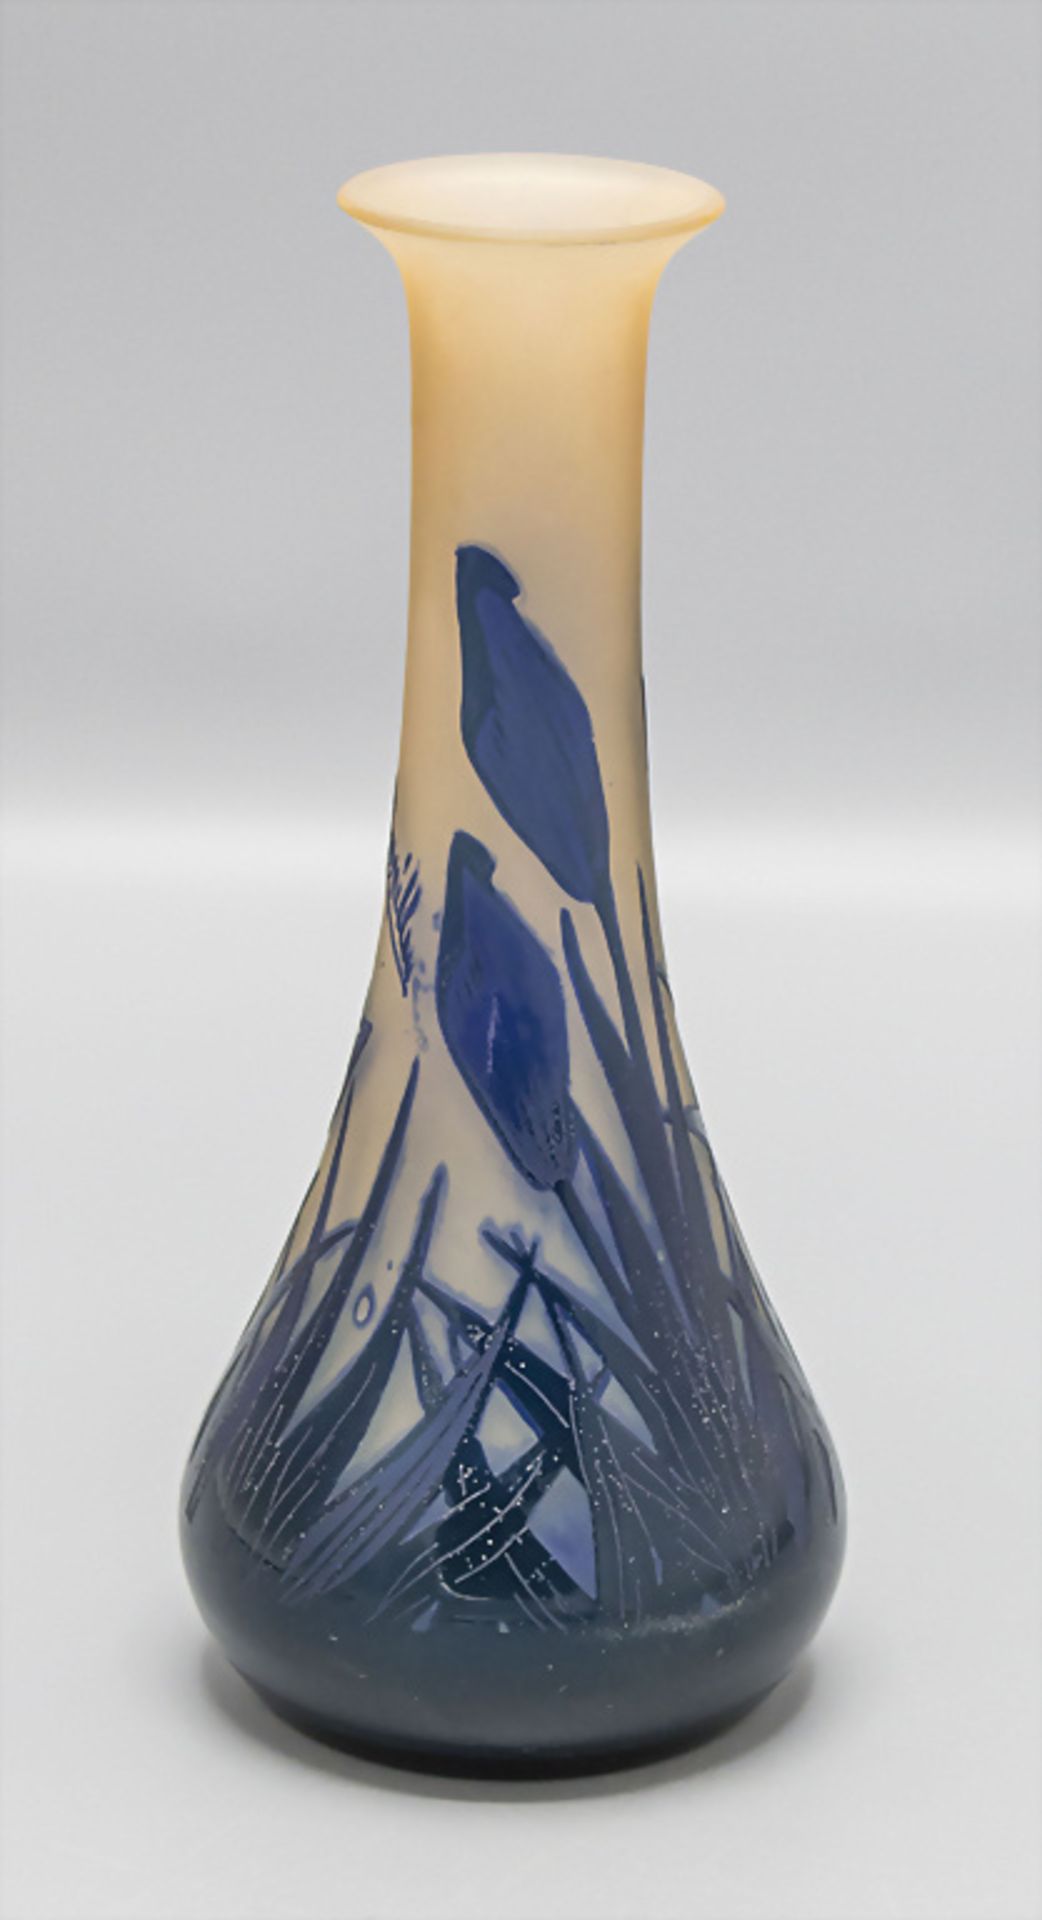 Jugendstil Vase 'Frühblüher' / An Art Noveau vase 'Early bloomers', Georges Raspiller, ... - Image 5 of 6